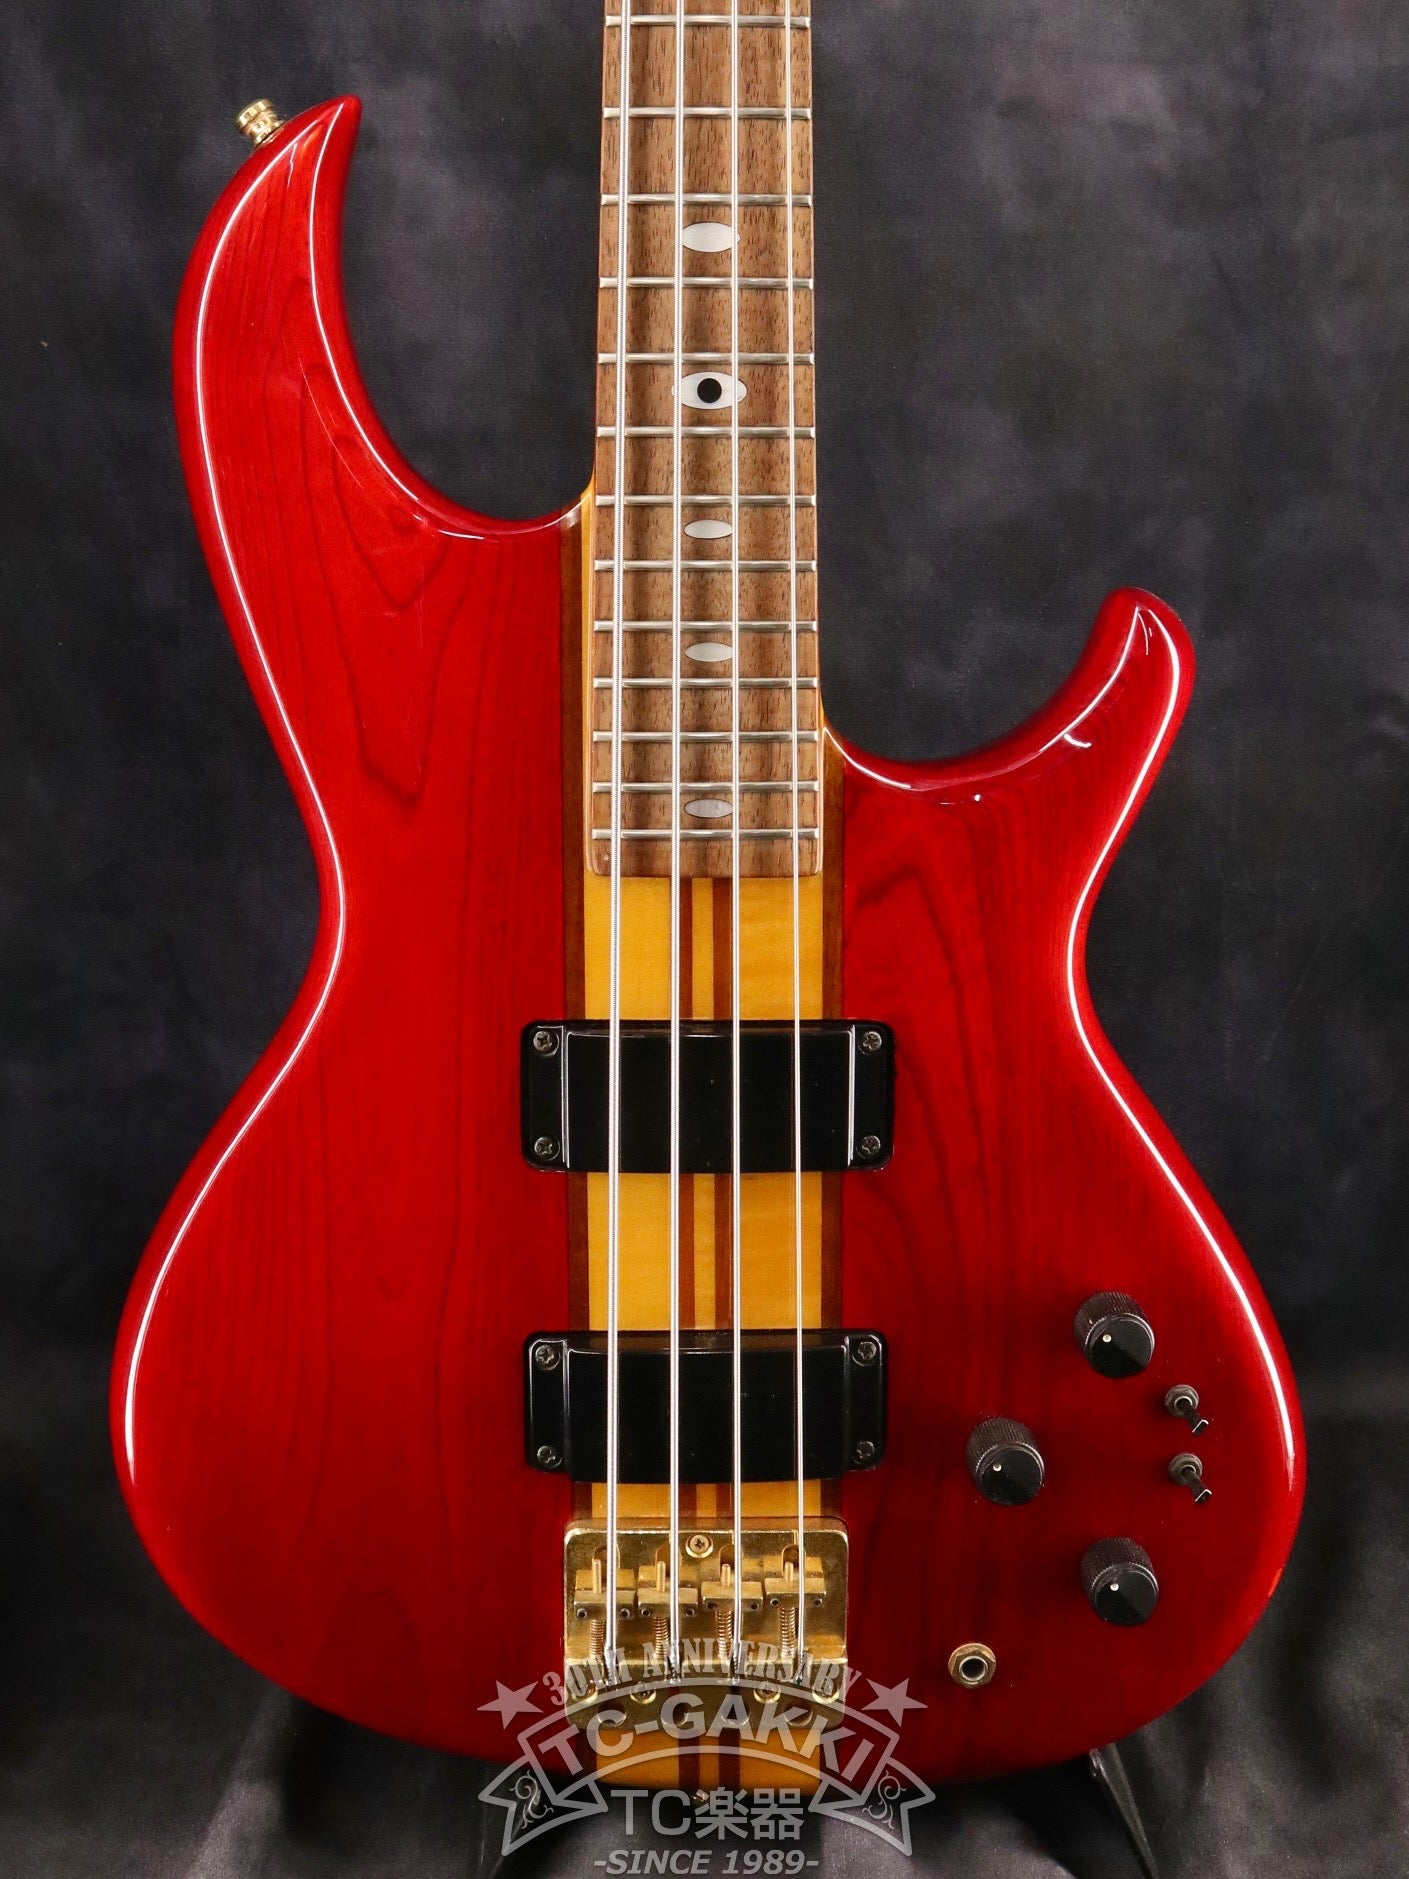 SB-800 Super Bass